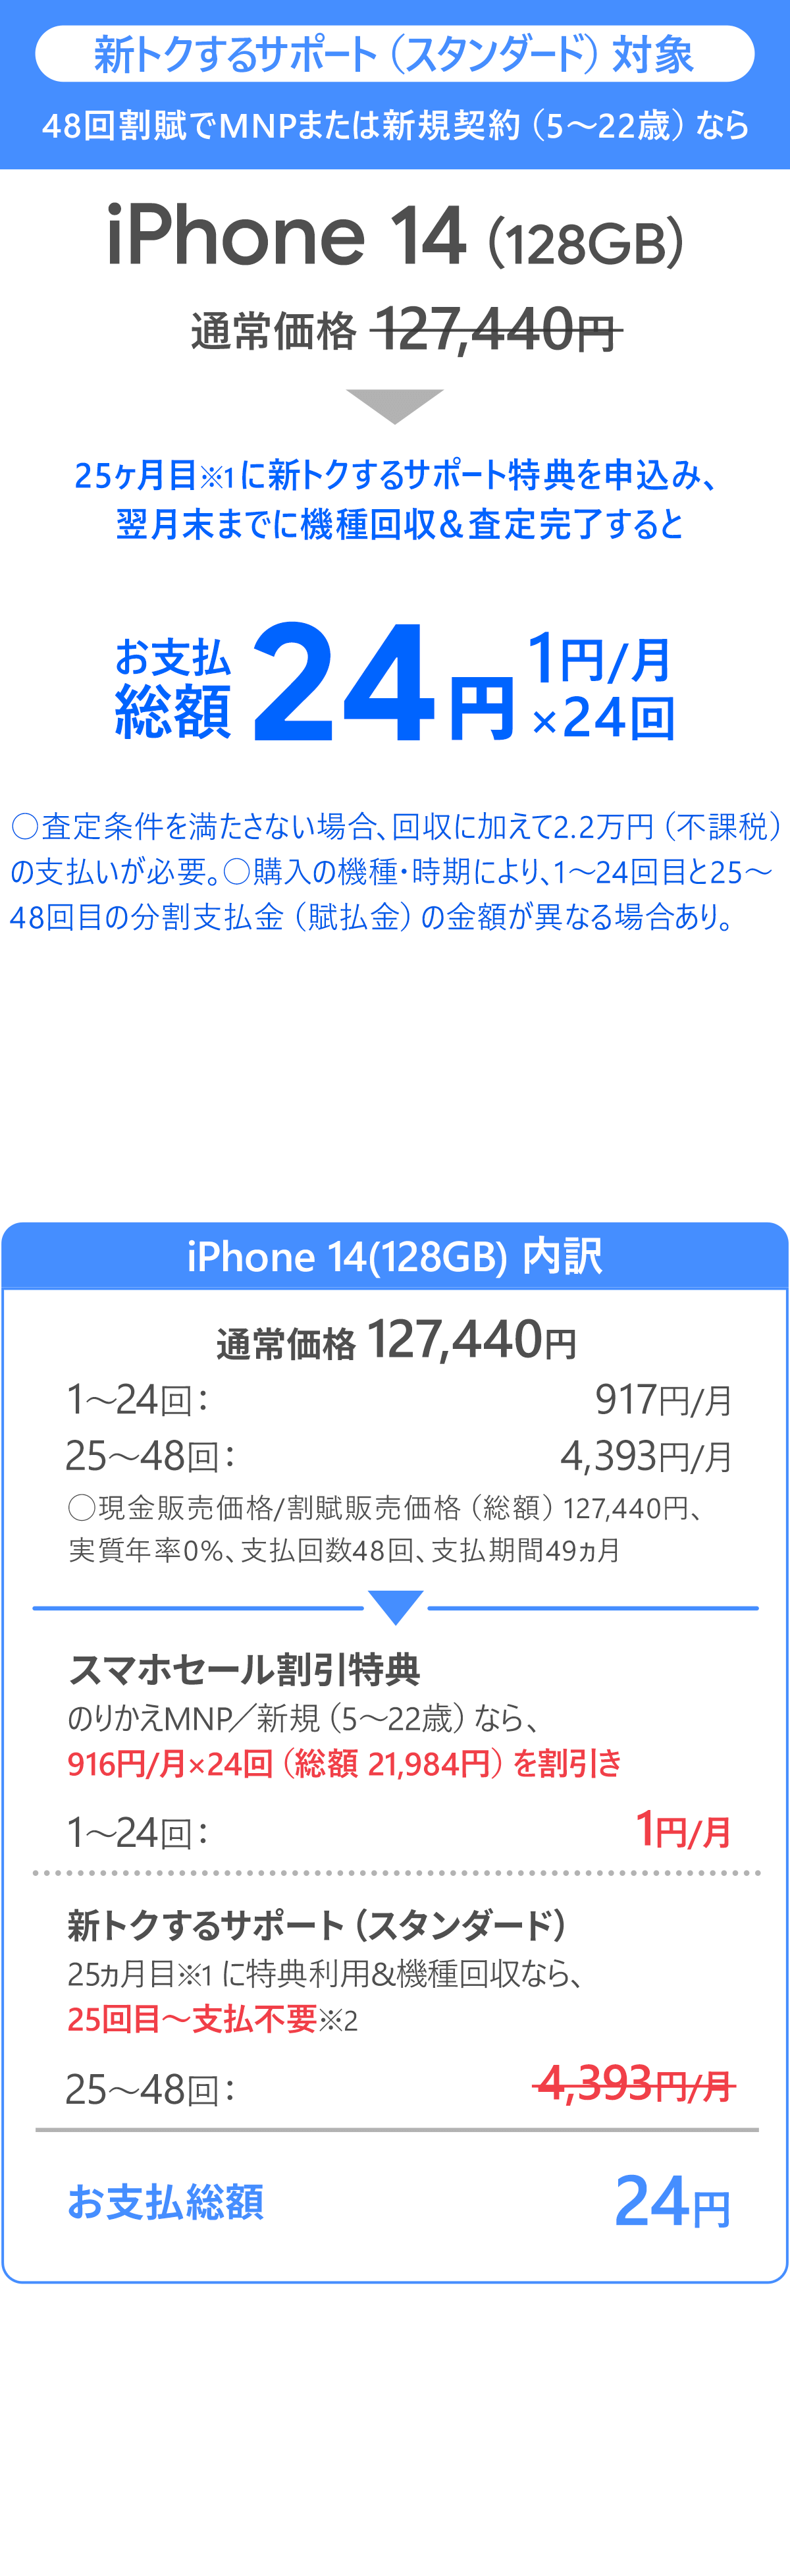 ソフトバンク「iPhone 14 128GB」大セール